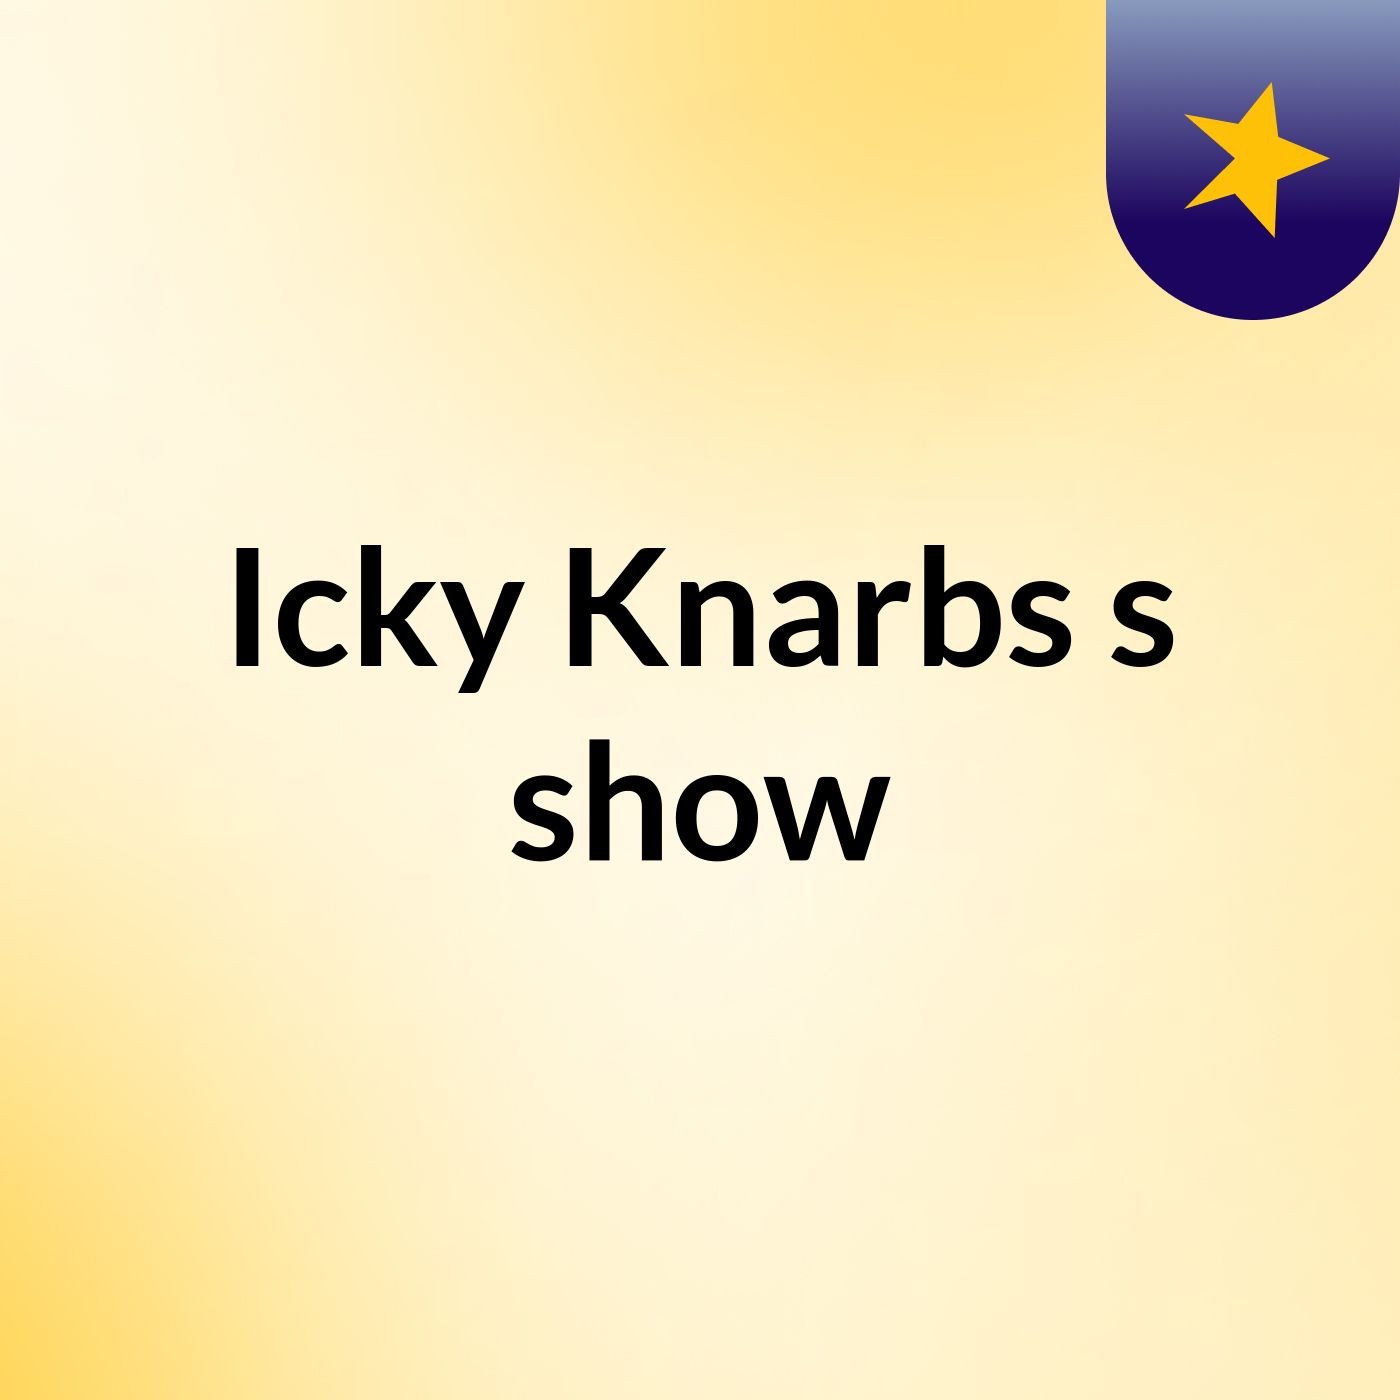 Icky Knarbs's show